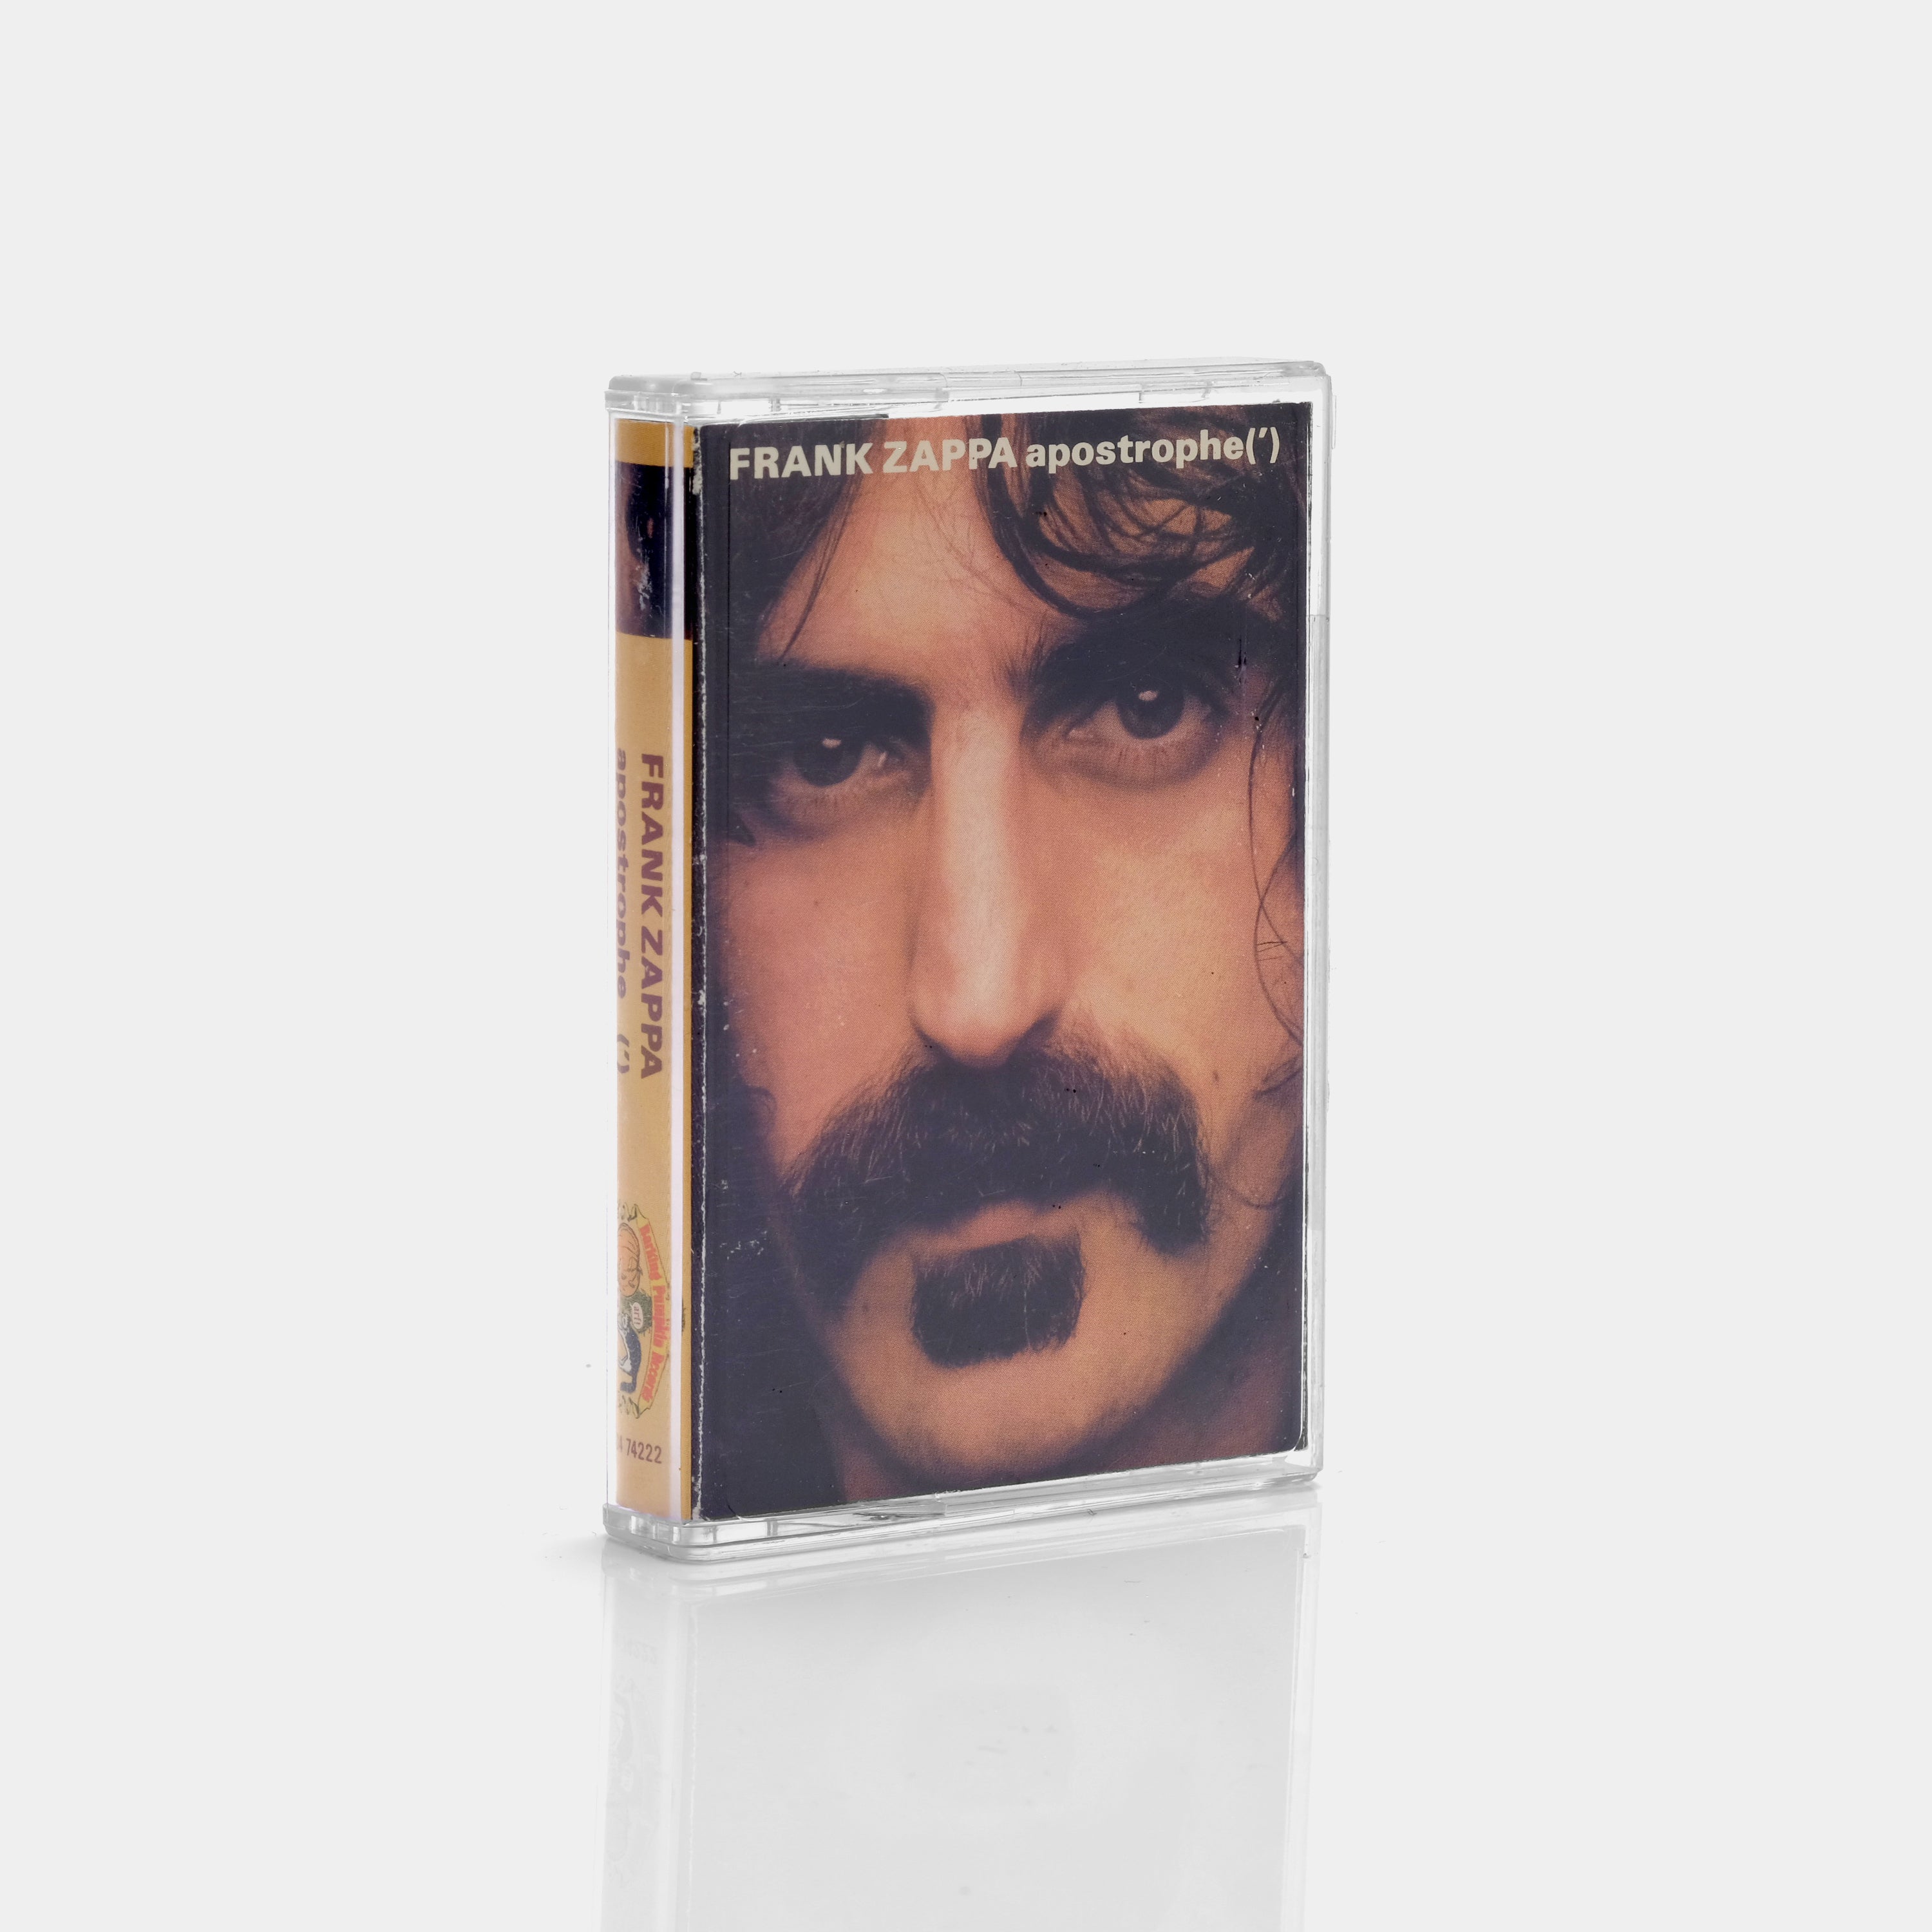 Frank Zappa - Apostrophe(') Cassette Tape